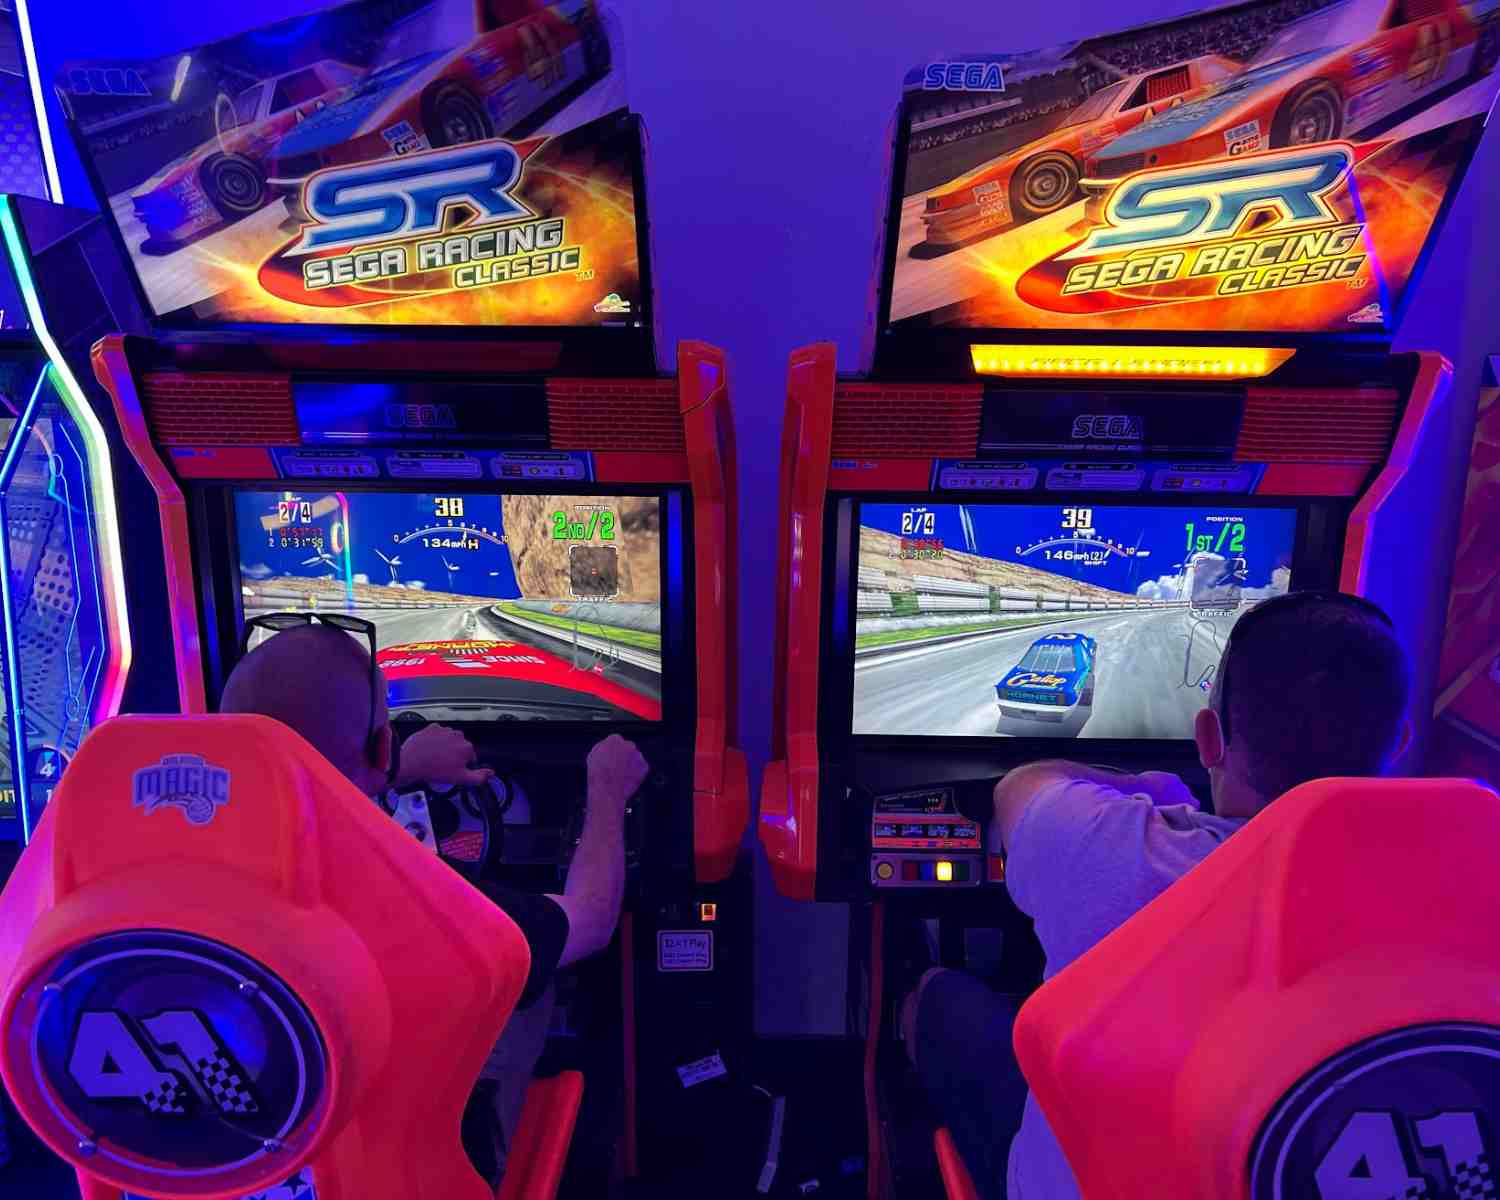 Racing cars at the arcade